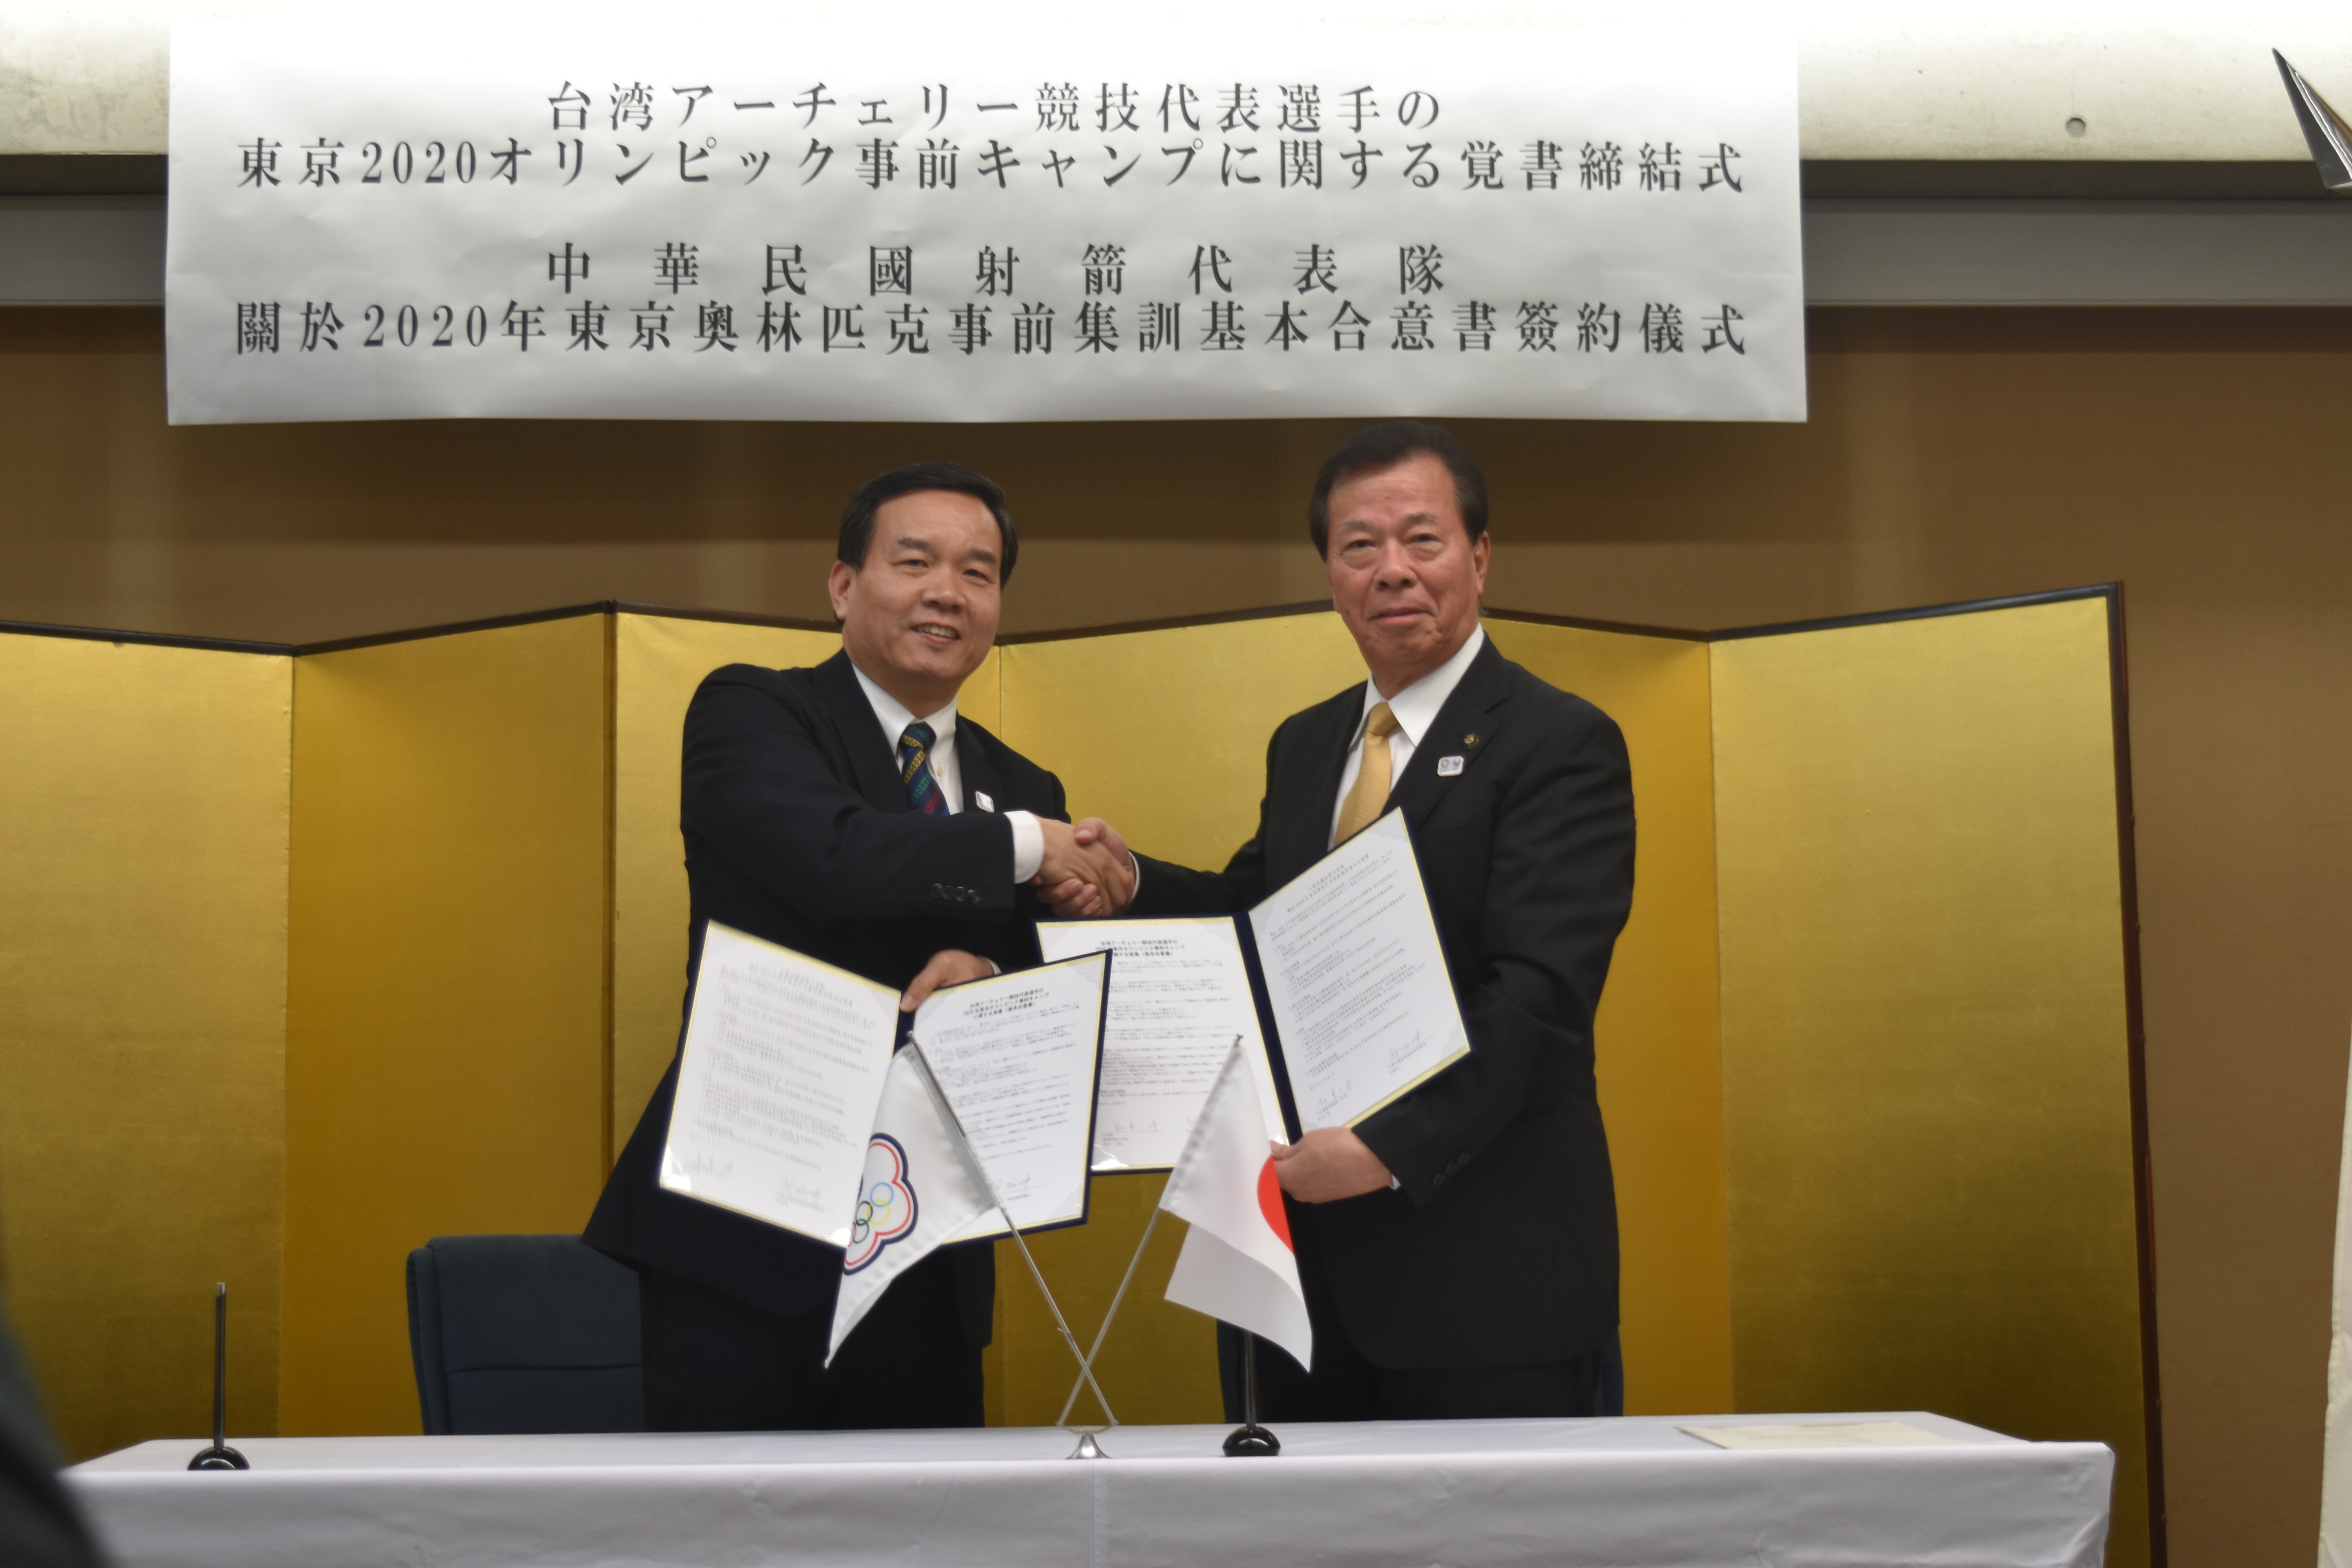 松井市長と台湾アーチェリー協会副理事長が覚書を持ち、にこやかに握手をしてカメラに視線を向けている写真